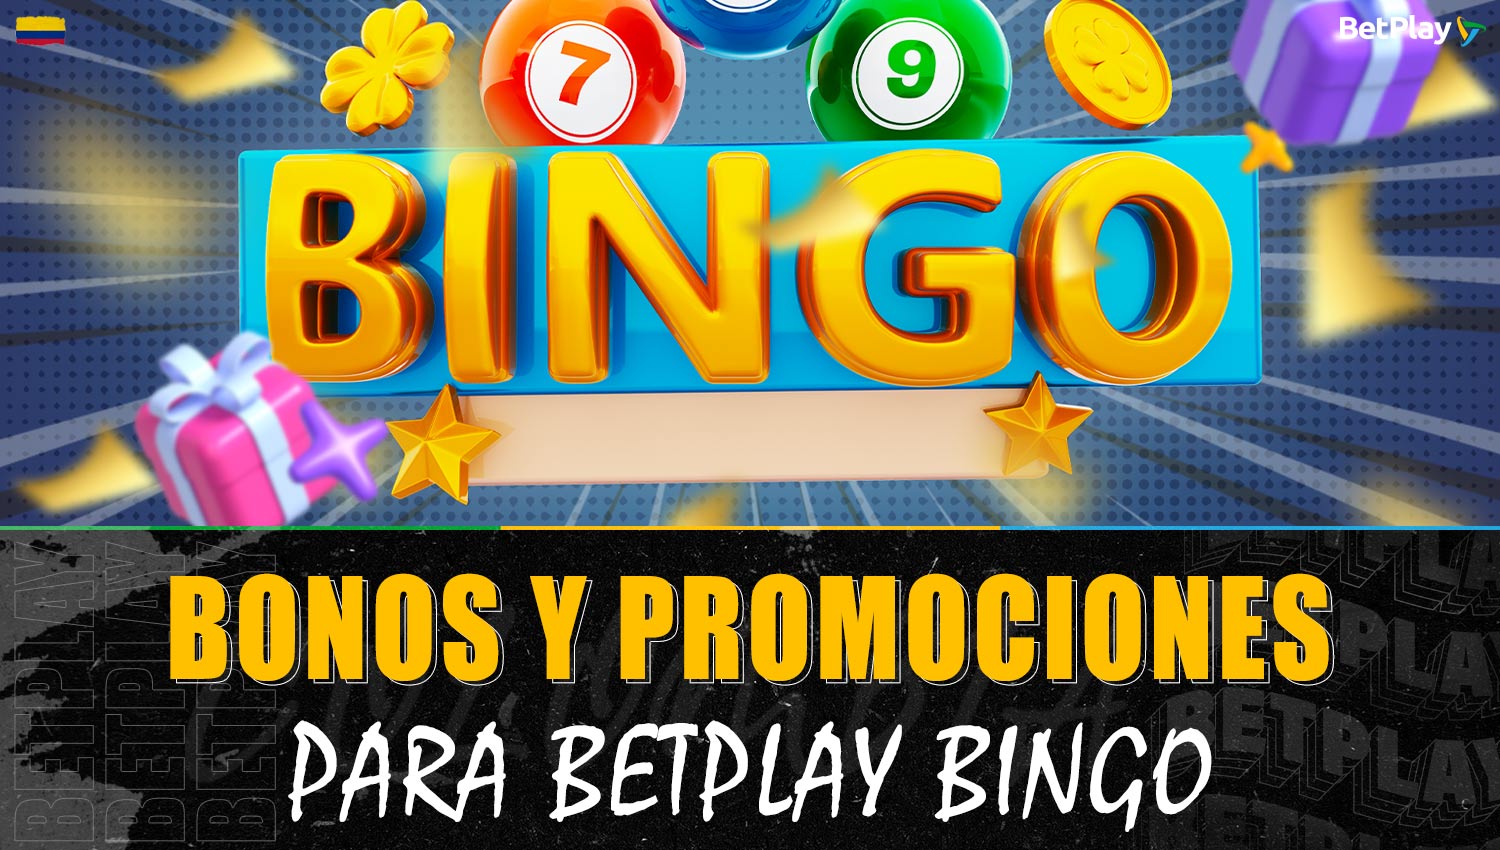 Promociones de bingo confiables